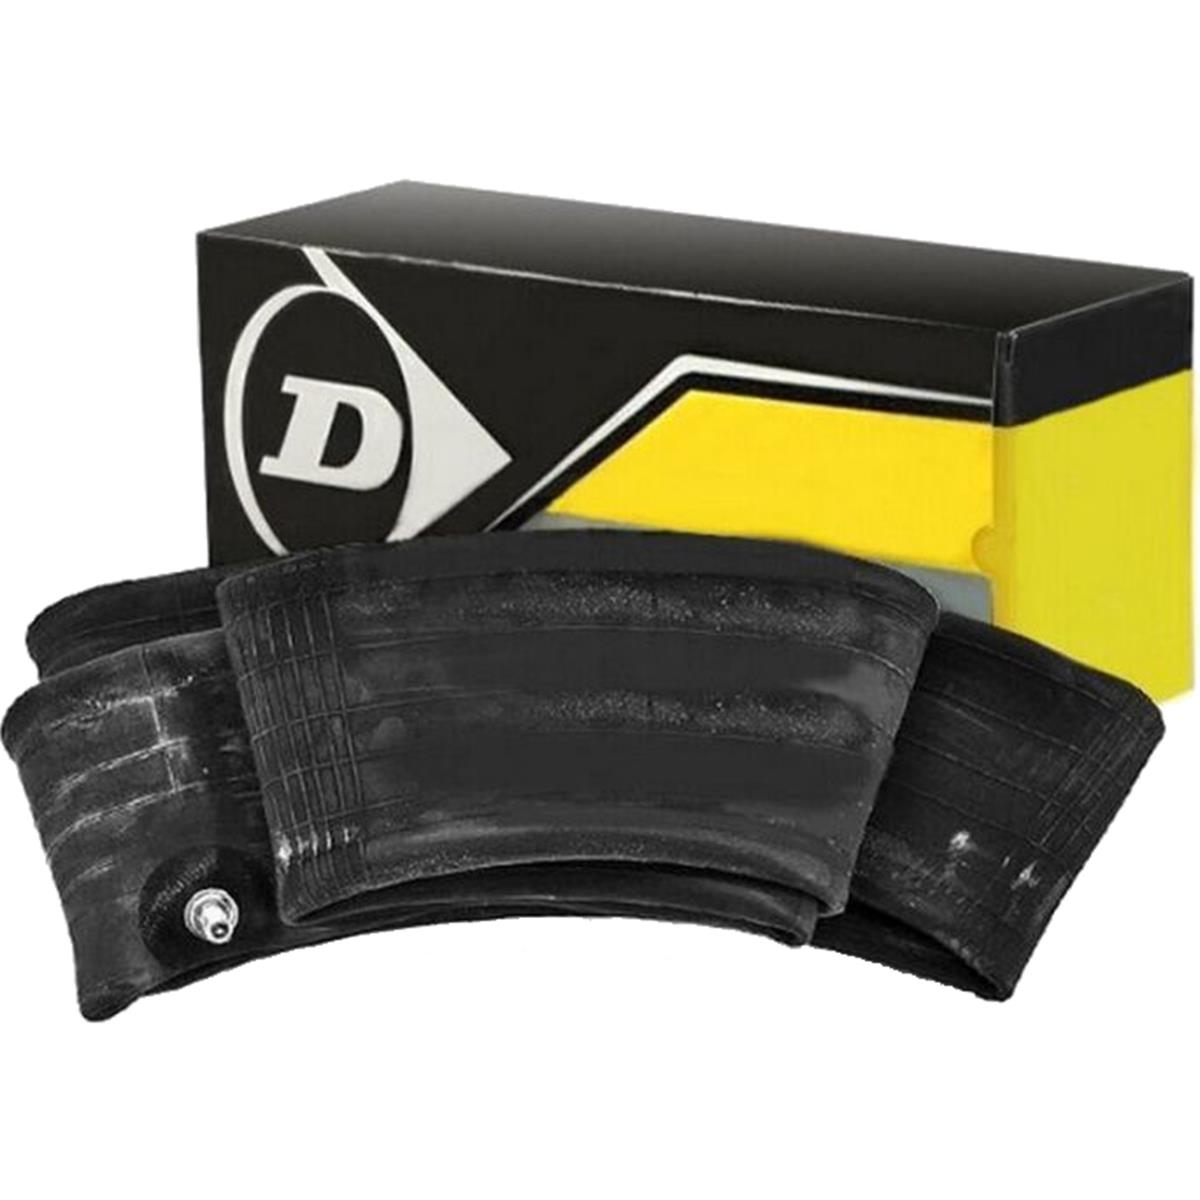 Dunlop Schlauch  2.75-21, 3.00-21, 70:90/100-21, TR4 MOT